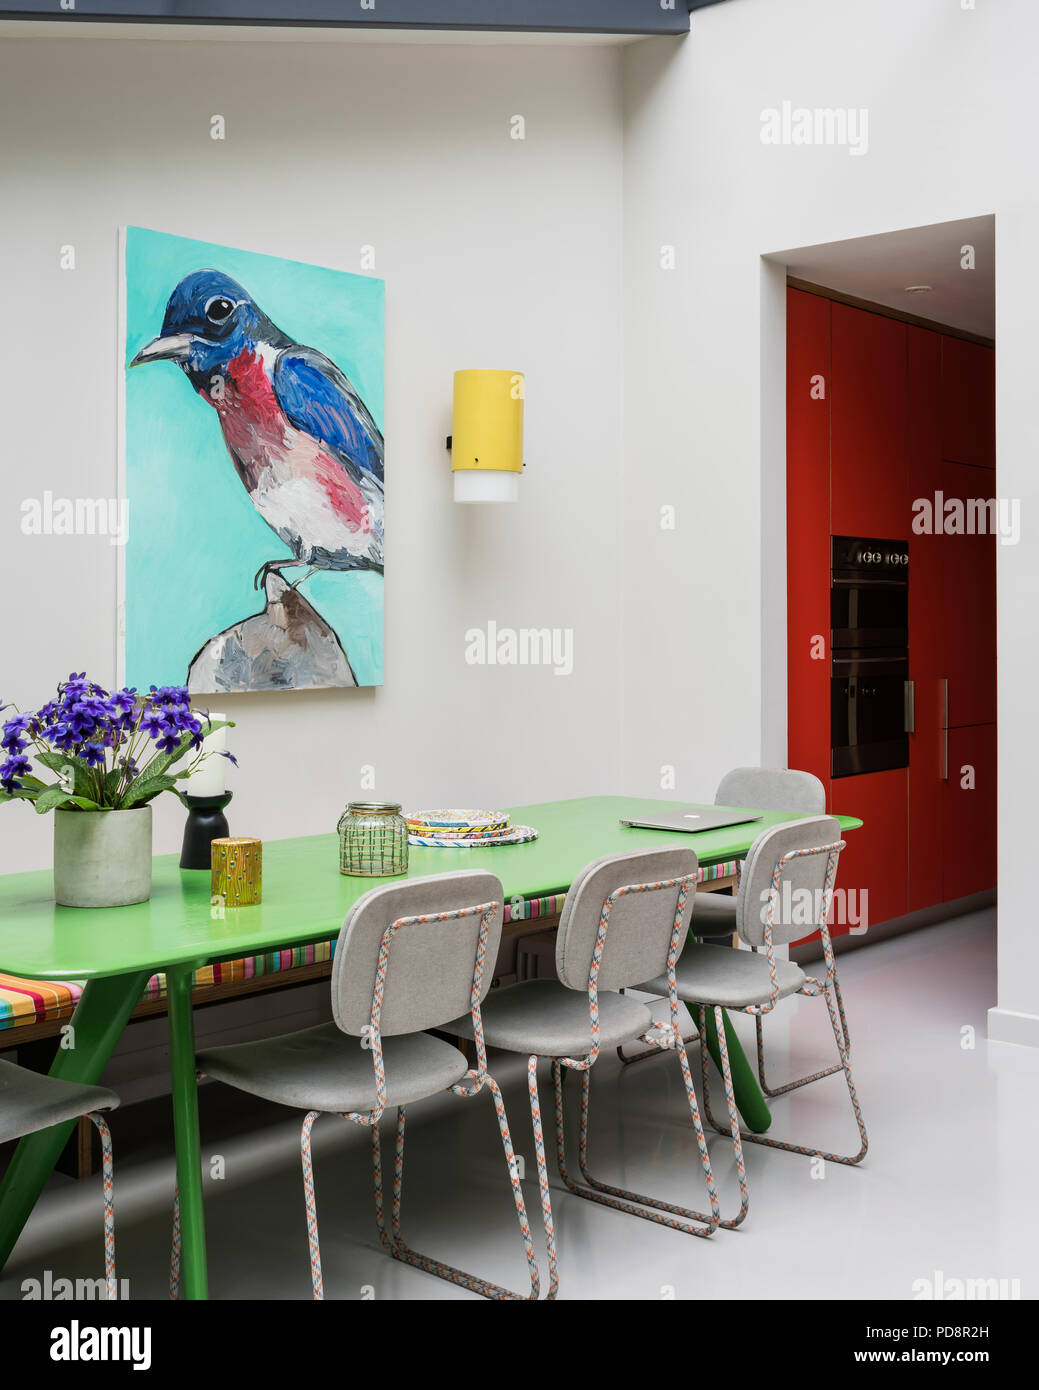 Portrait d'oiseaux par James Franco veille sur le tableau peint en vert personnalisé par Tom Dixon et chaises de Moooi. Banque D'Images